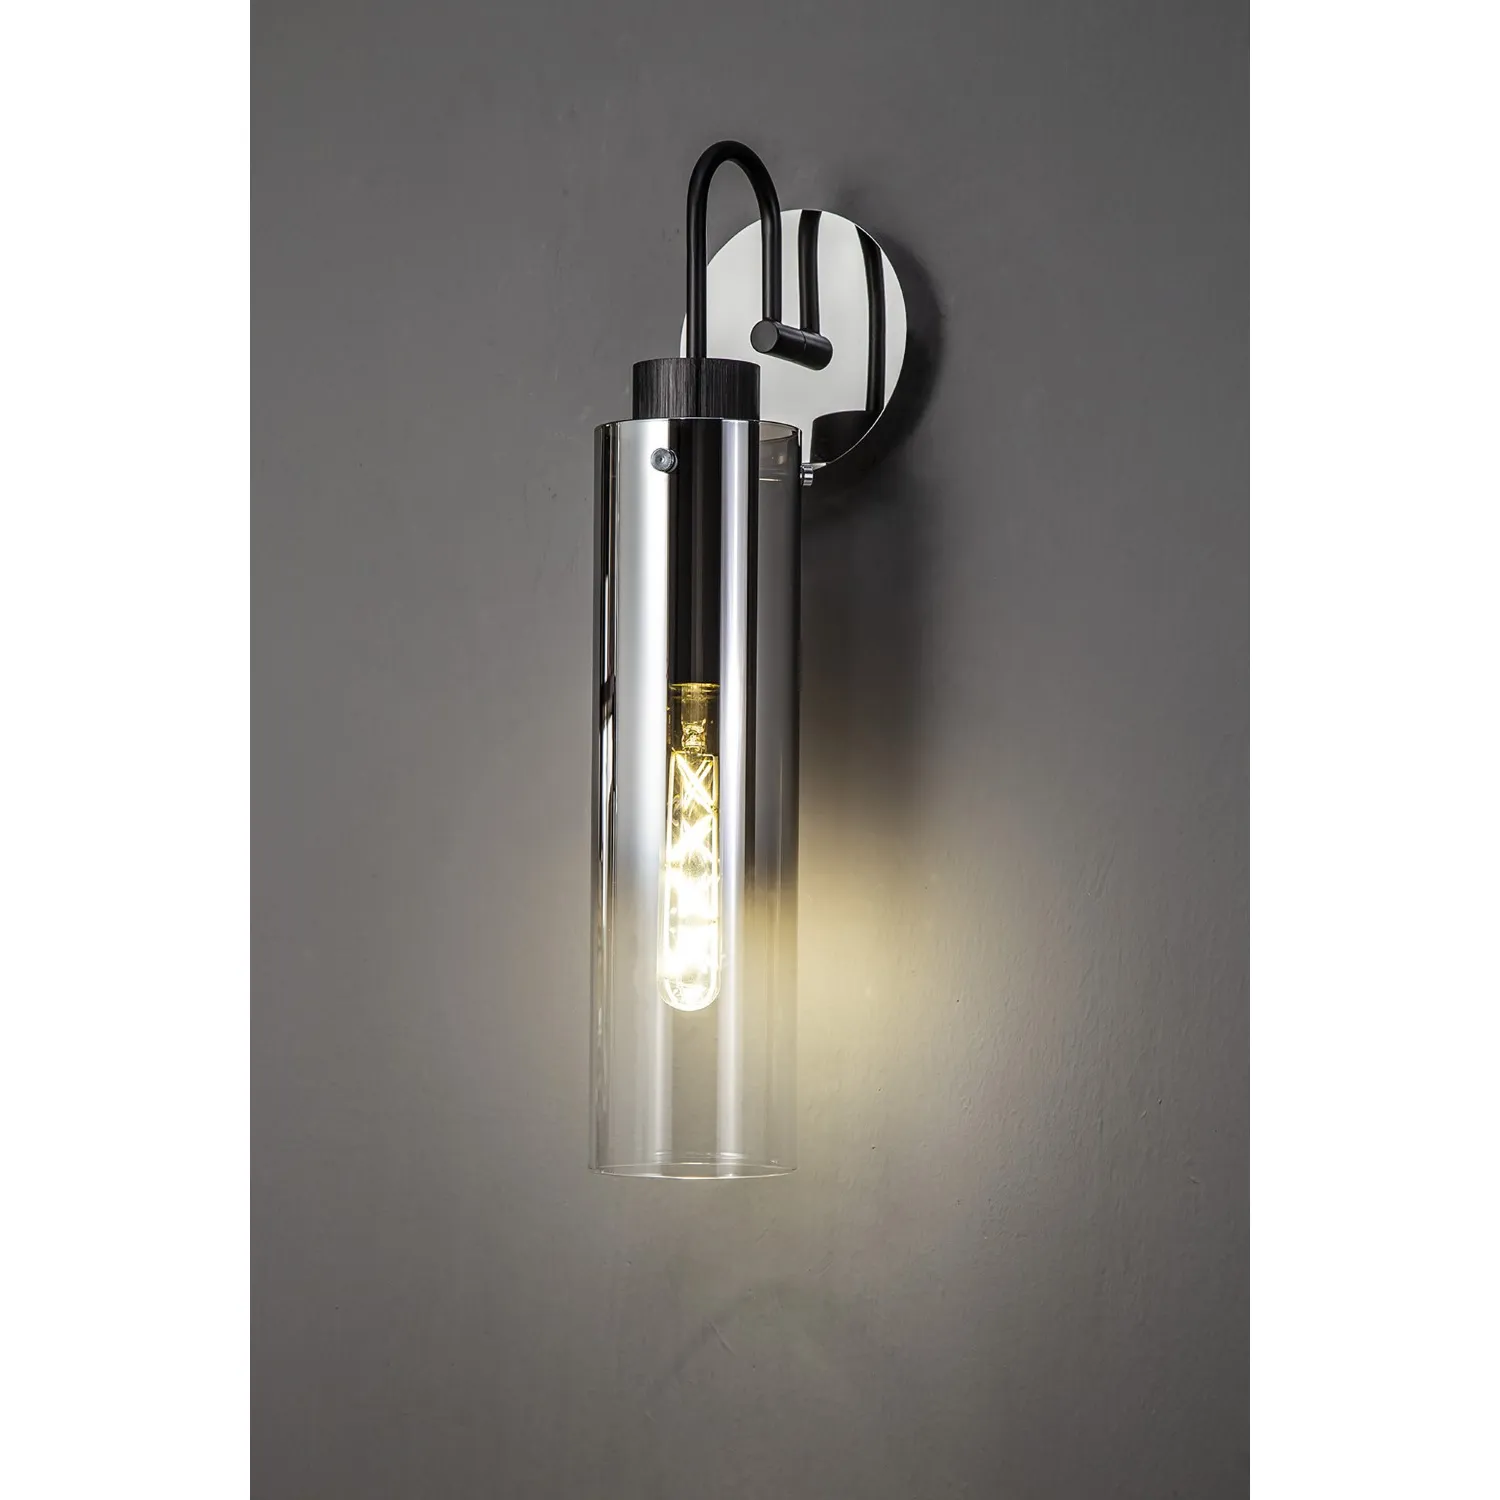 Black Polished Chrome 1 Light E27 Single Switched Wall Lamp